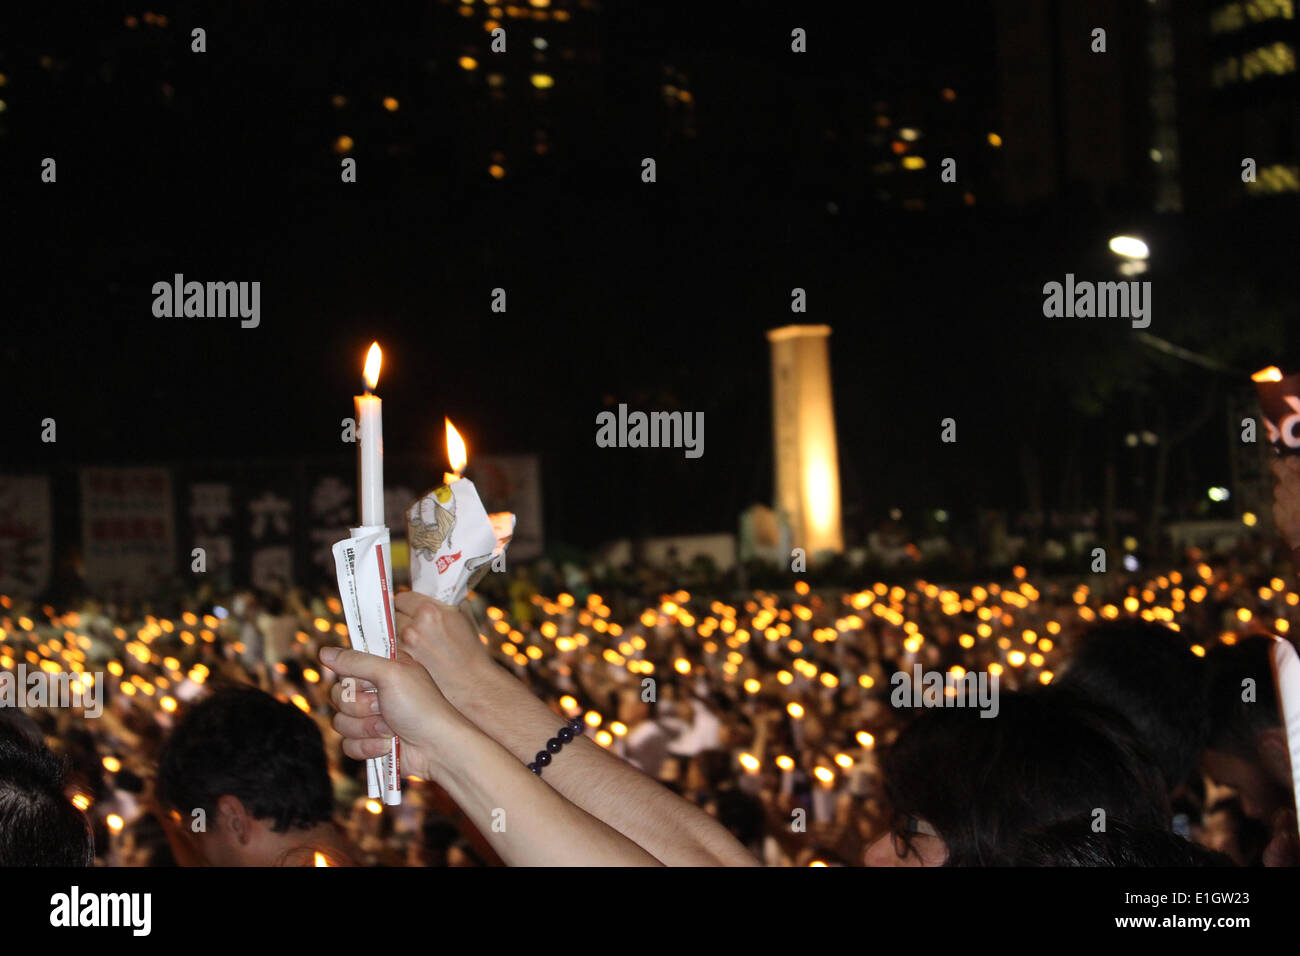 Hong Kong. 04 Juin, 2014. Hong Kong, les gens prennent part à la veillée aux chandelles pour marquer le 25e anniversaire de la Place Tienanmen 1989 Crédit : Robert SC Kemp/Alamy Live News Banque D'Images